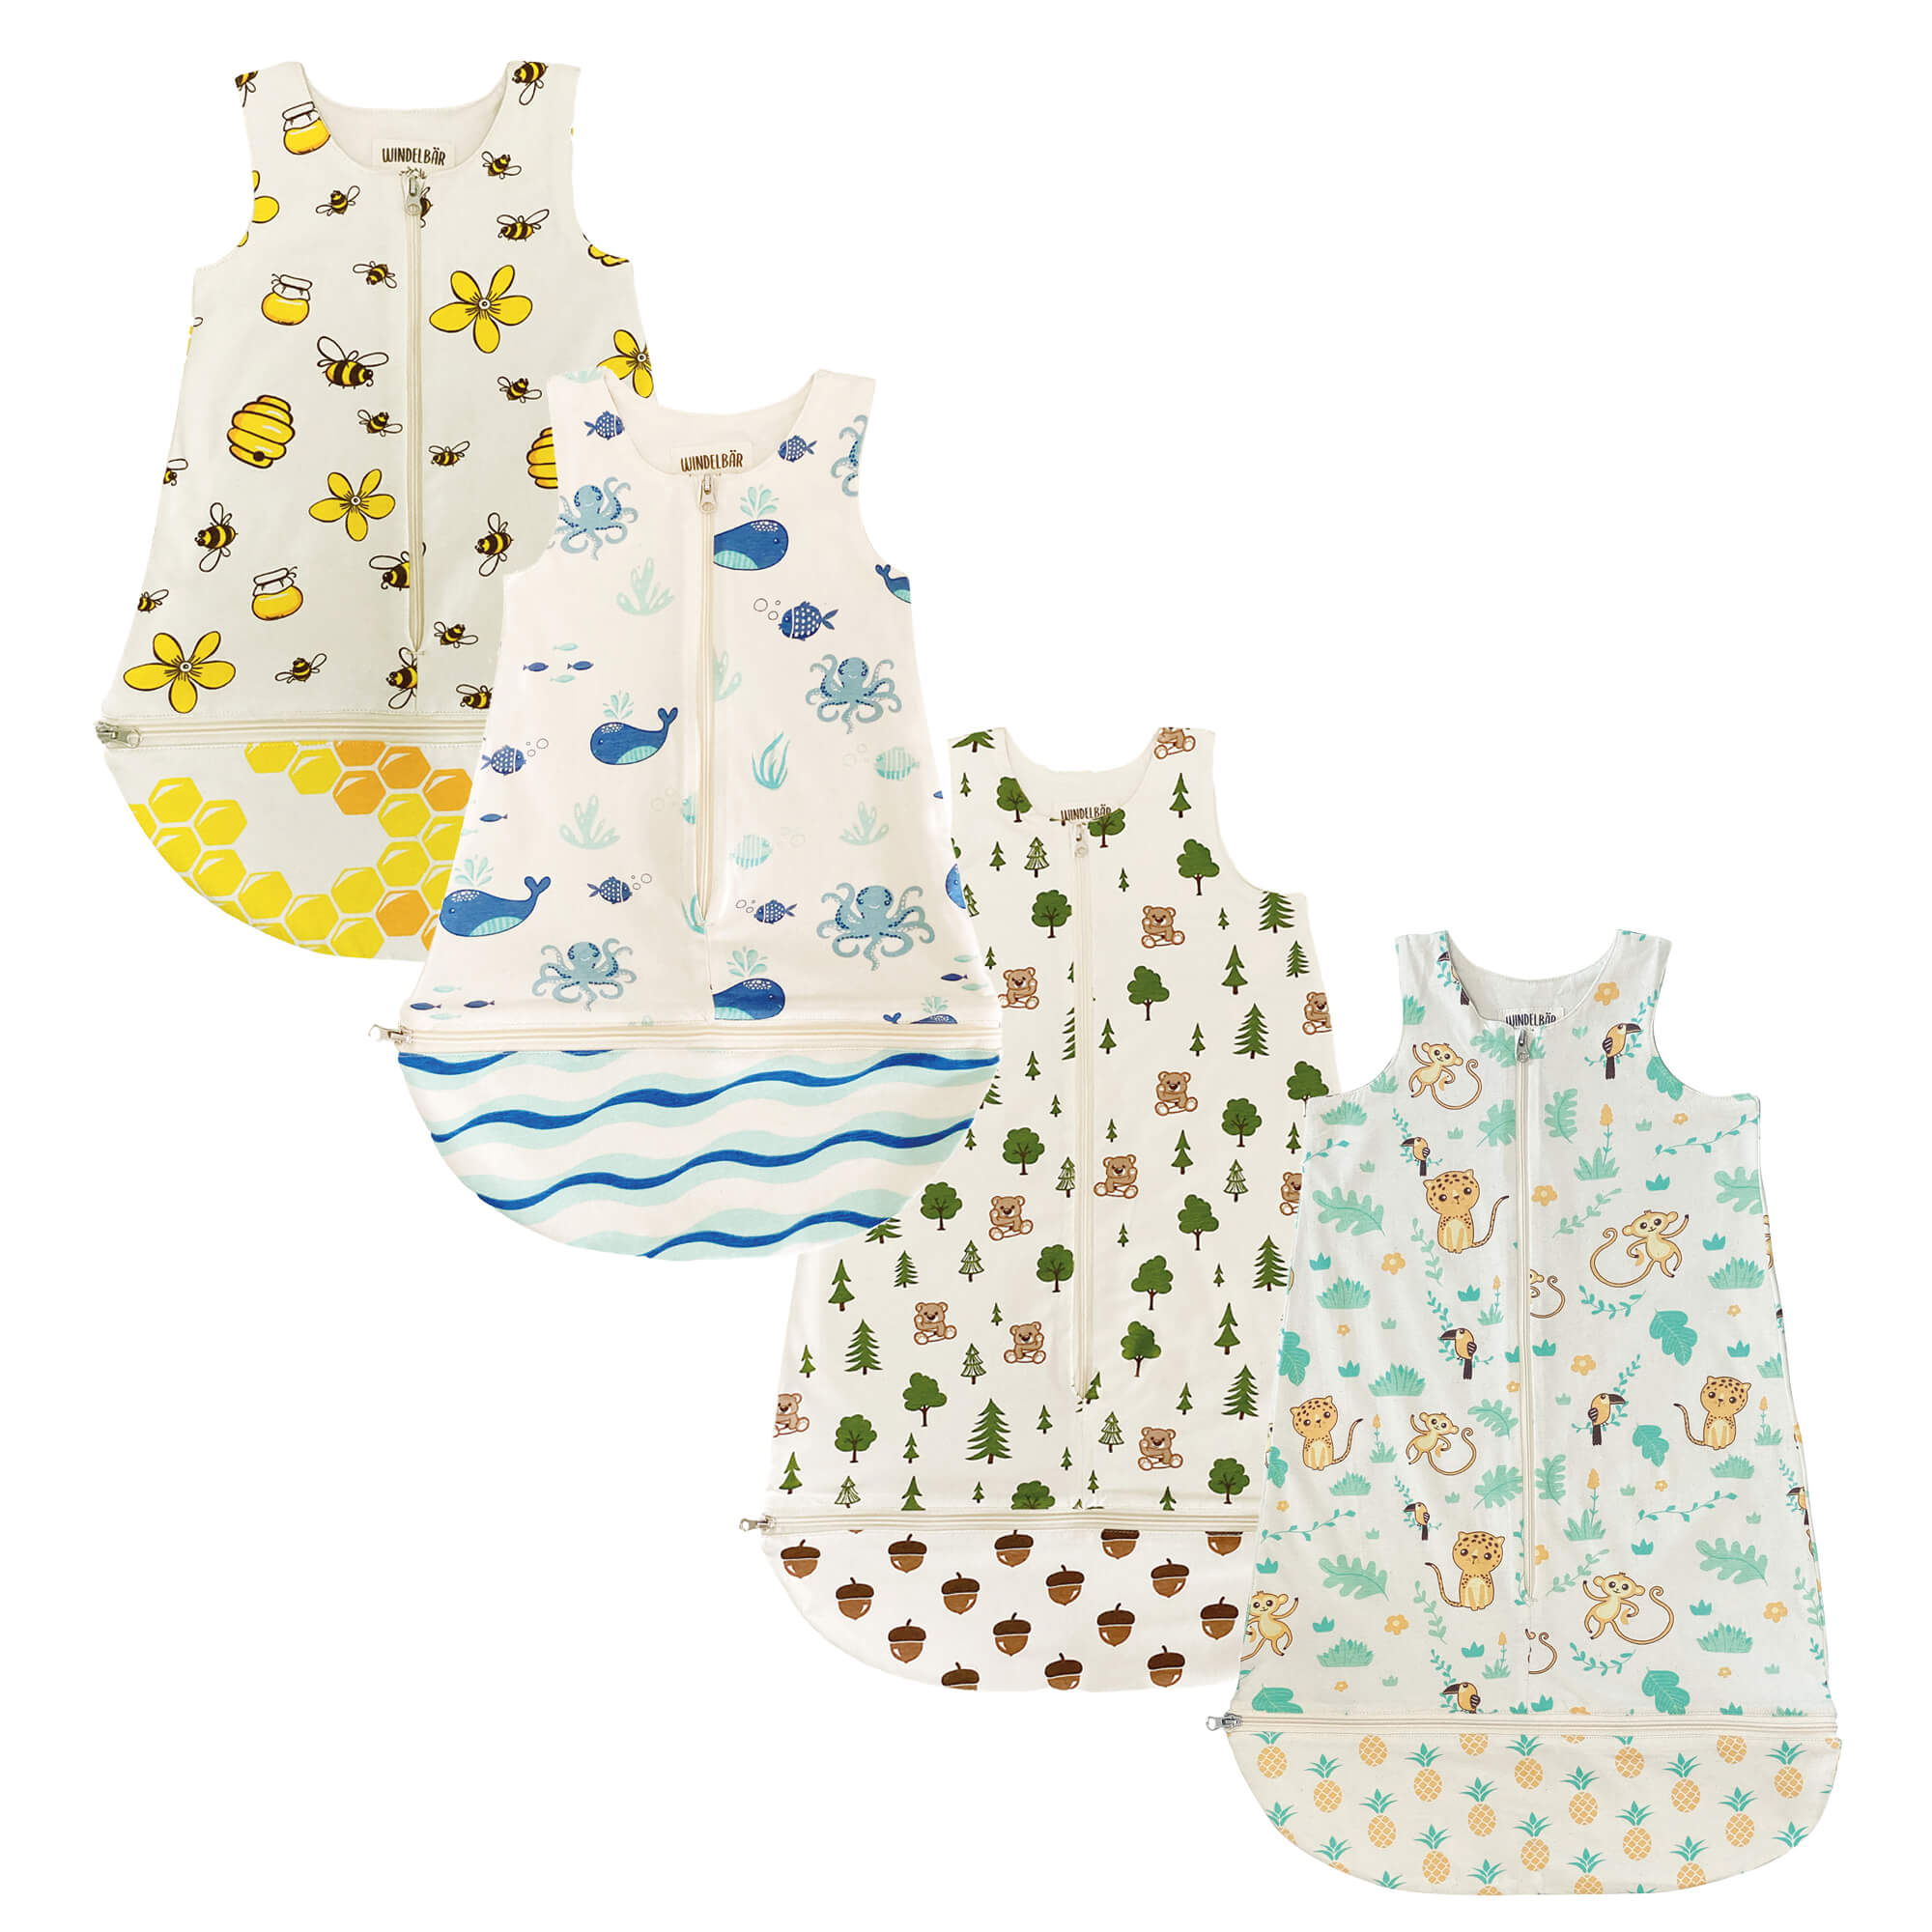 Windelbär Baby-Schlafsäcke 4 Designs Wald, Meer, Bienen, DschungelWald